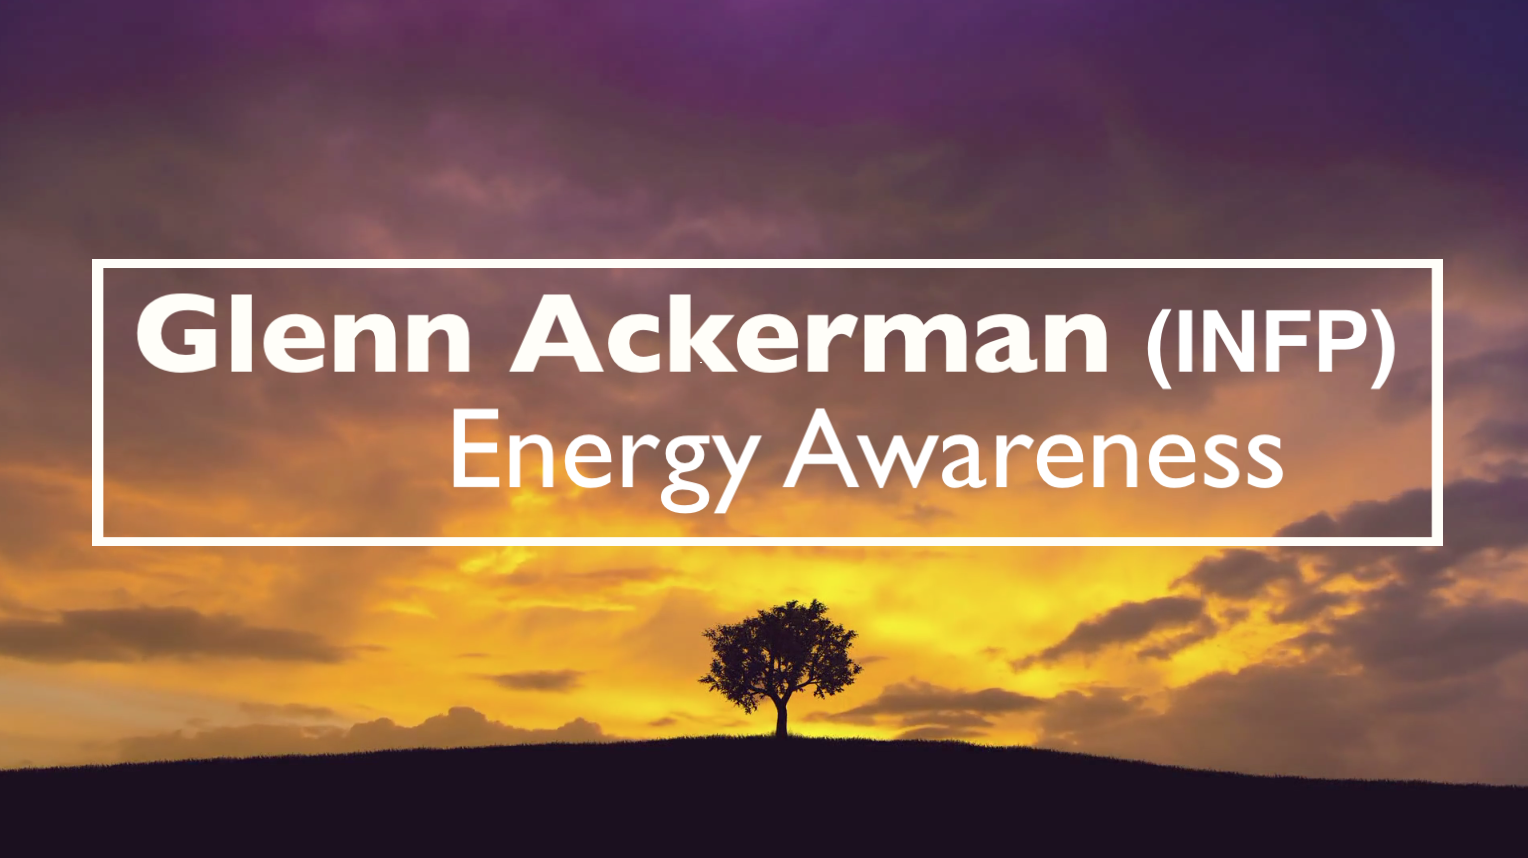 [VIDEO] "Energy Awareness" with Glenn Ackerman (INFP)